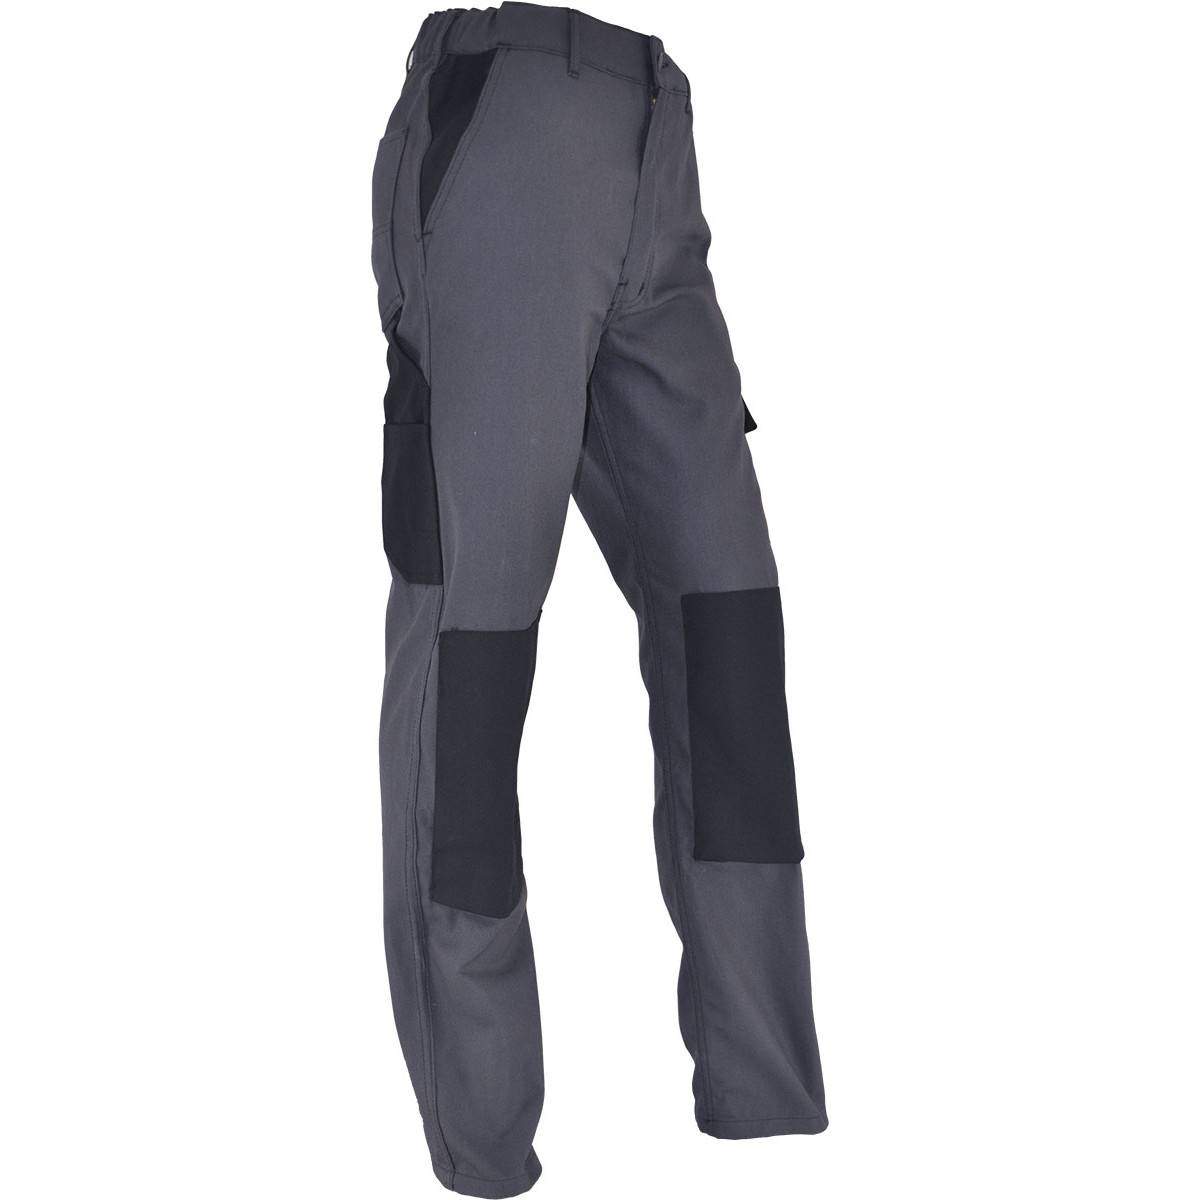 Pantalon de travail confort taille 48, gris Anthracite, poches multiples, genouillères chantiers incluses